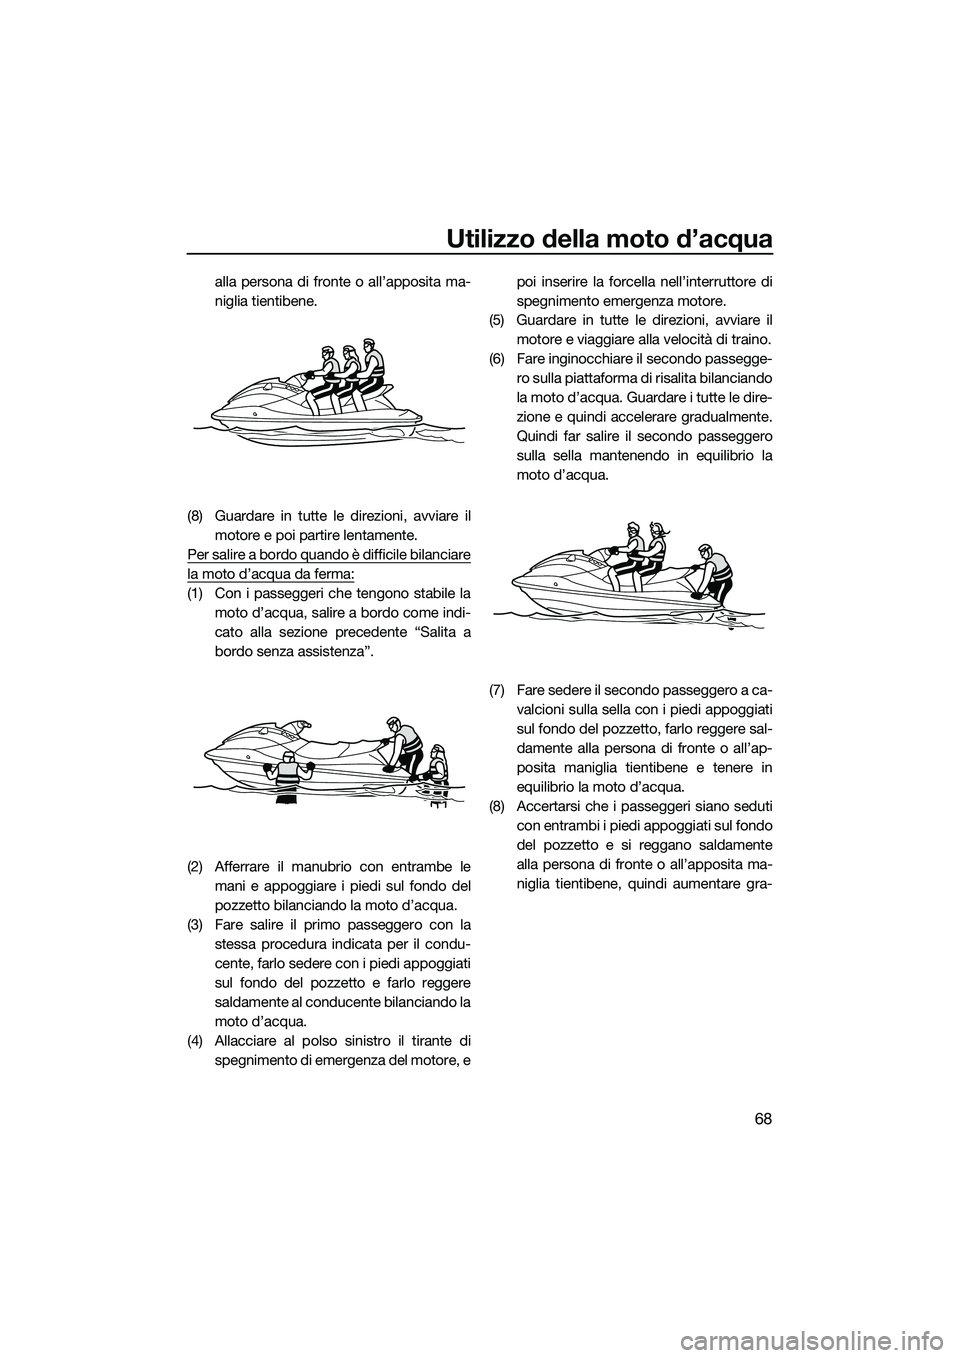 YAMAHA V1 2015  Manuale duso (in Italian) Utilizzo della moto d’acqua
68
alla persona di fronte o all’apposita ma-
niglia tientibene.
(8) Guardare in tutte le direzioni, avviare il motore e poi partire lentamente.
Per salire a bordo quand